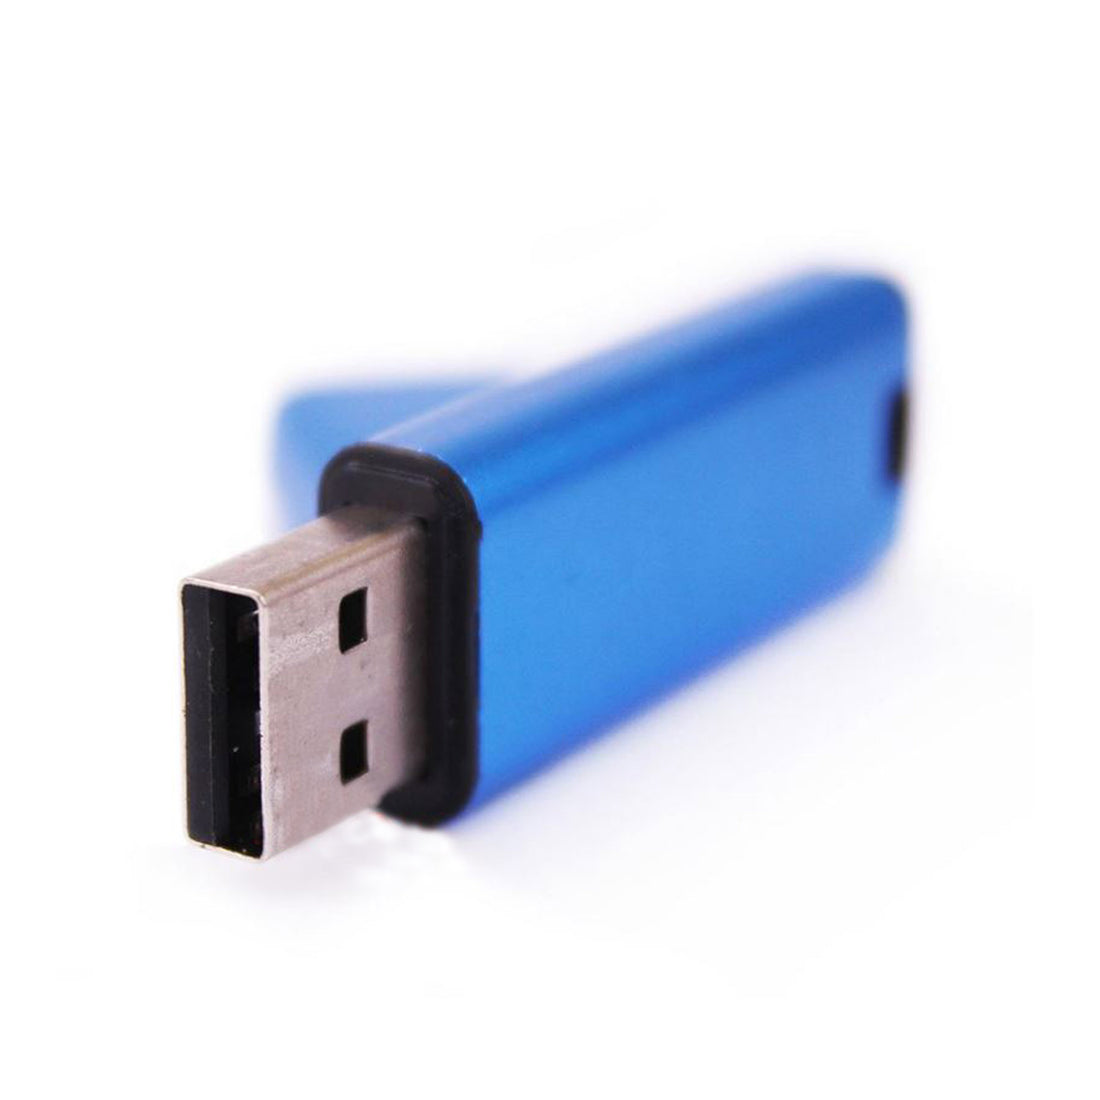 Metallic Flash Memory Stick - Black, Silver, Blue or Pink